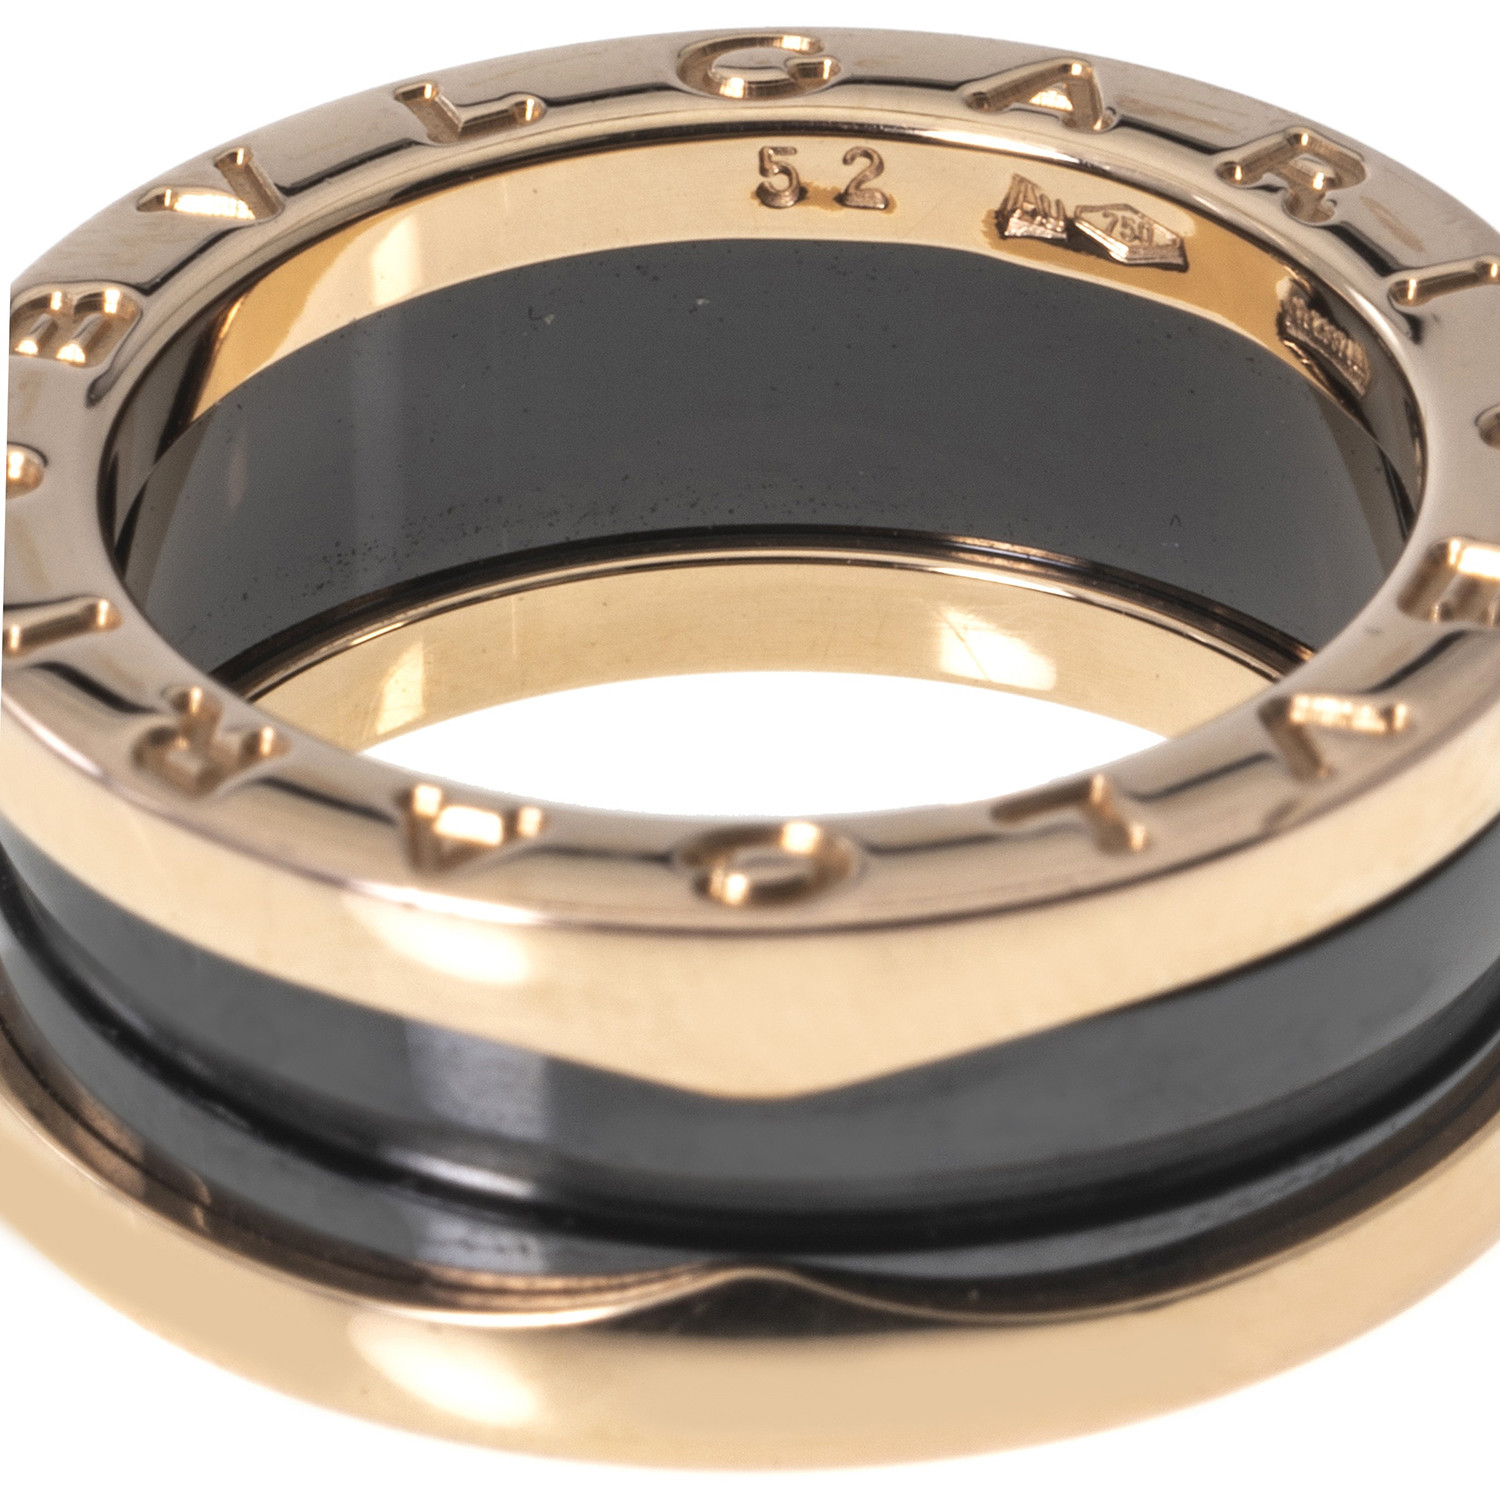 Bulgari B Zero 18k Rose Gold + Ceramic Ring // Ring Size 6 Bulgari